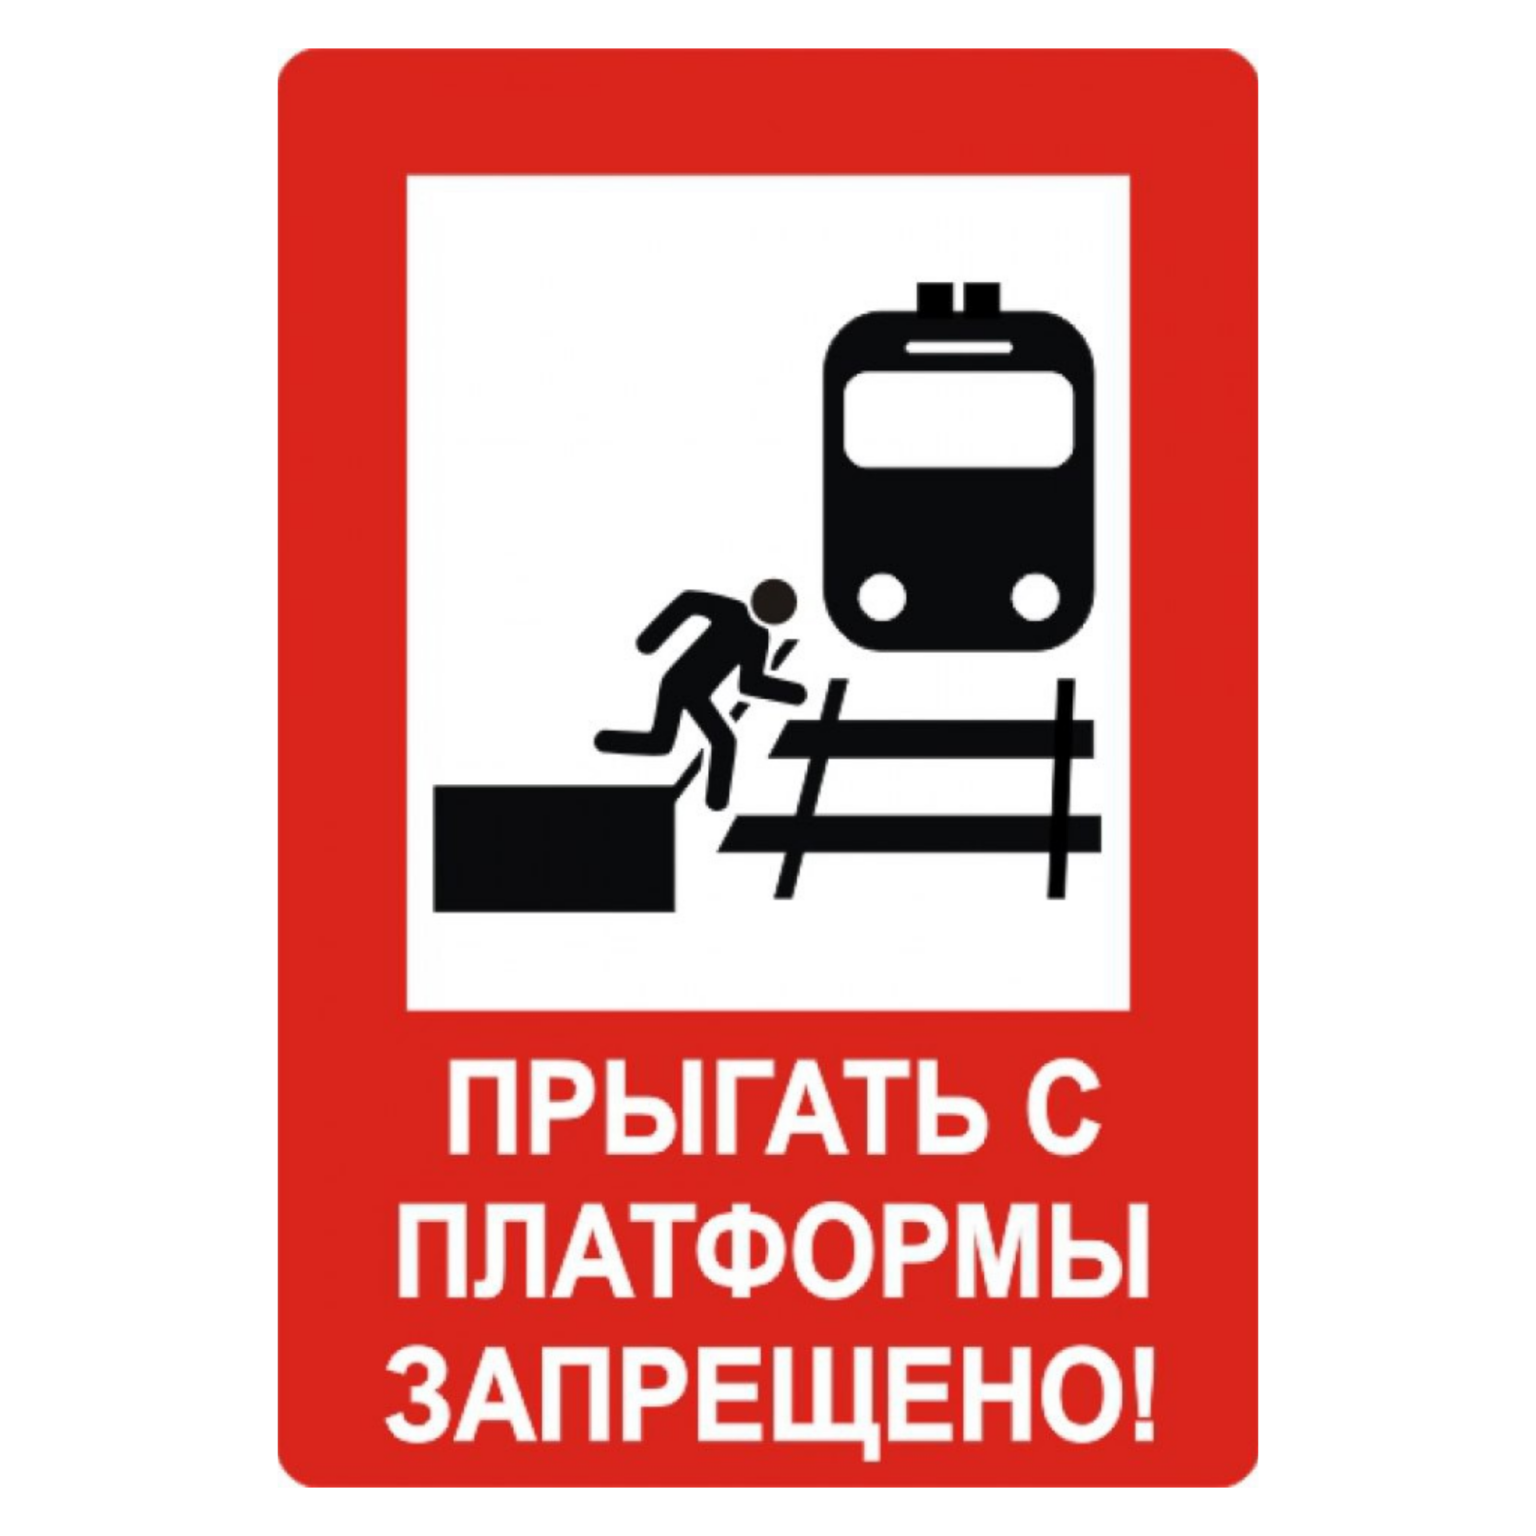 На железной дороге запрещено. Прыгать с платформы запрещено. Железнодорожные знаки. Знаки безопасности на железной дороге. Знак прыгать с платформы запрещено.